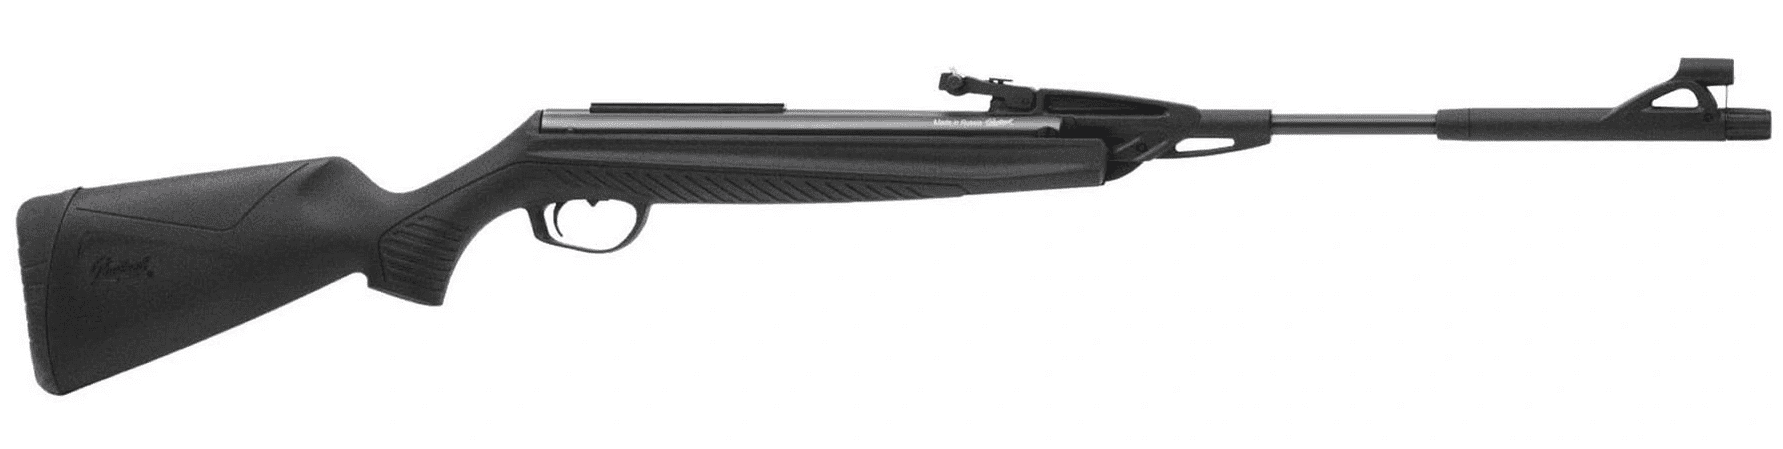 Пневматическая винтовка МР-512-52 кал.4,5мм, пластик